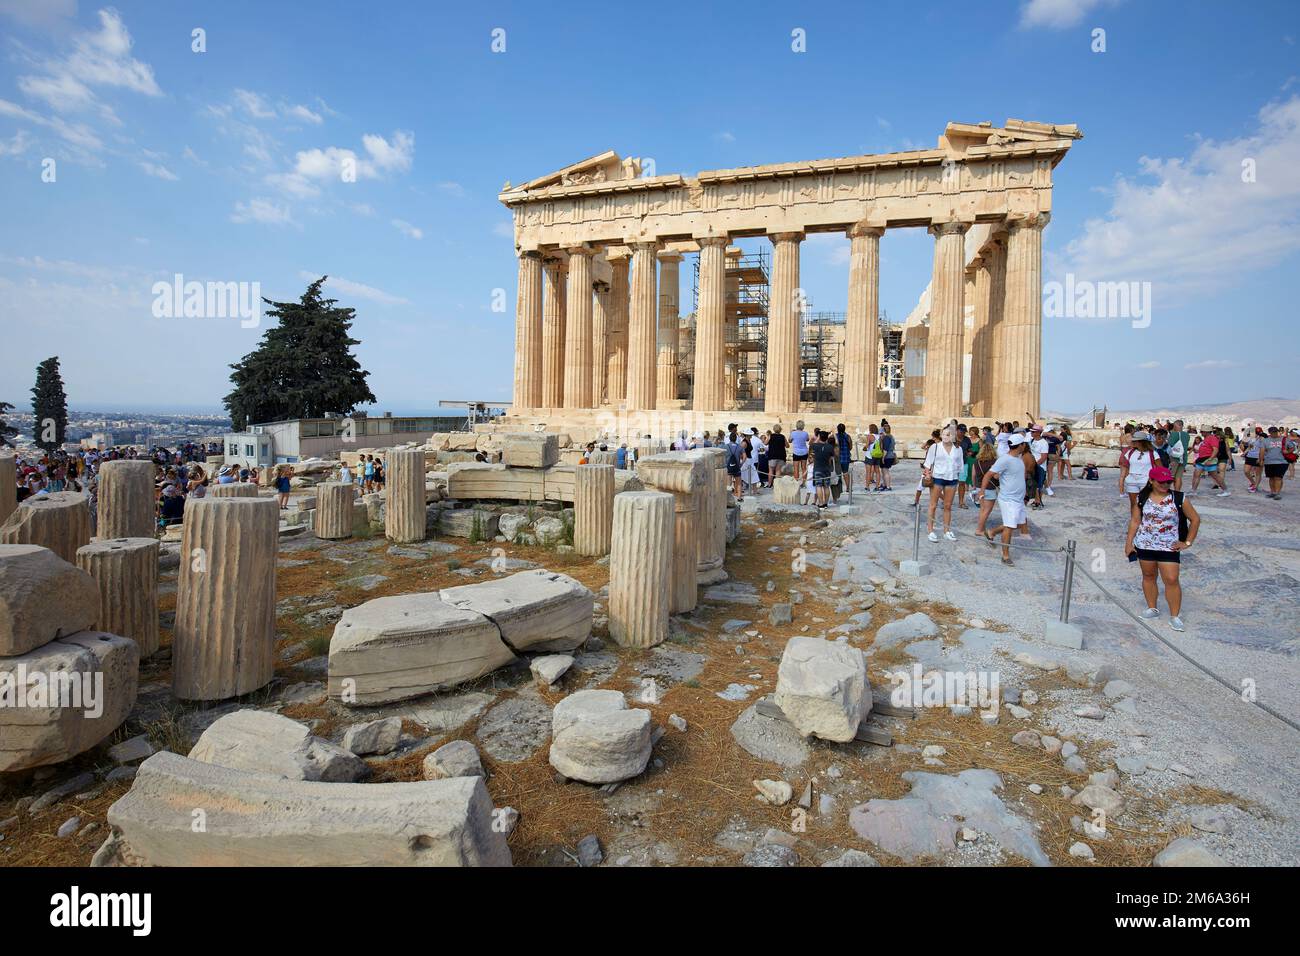 The Parthenon and the Acropolis, Athens, Greece Stock Photo